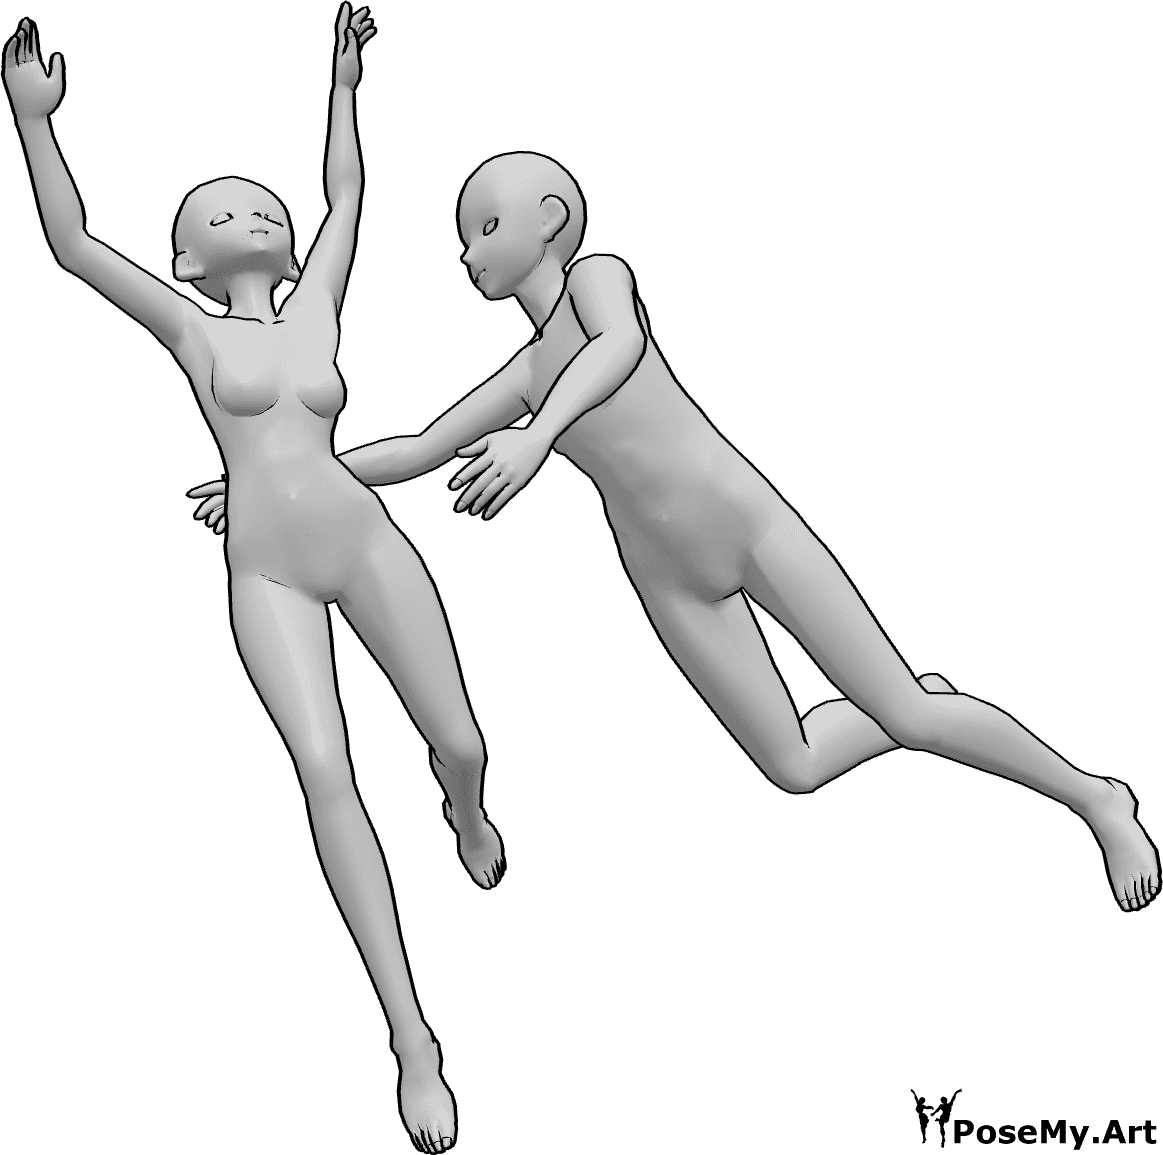 Referencia de poses- Postura de caída femenina masculina - Anime a la hembra y al macho a caer juntos, el macho intenta alcanzar a la hembra